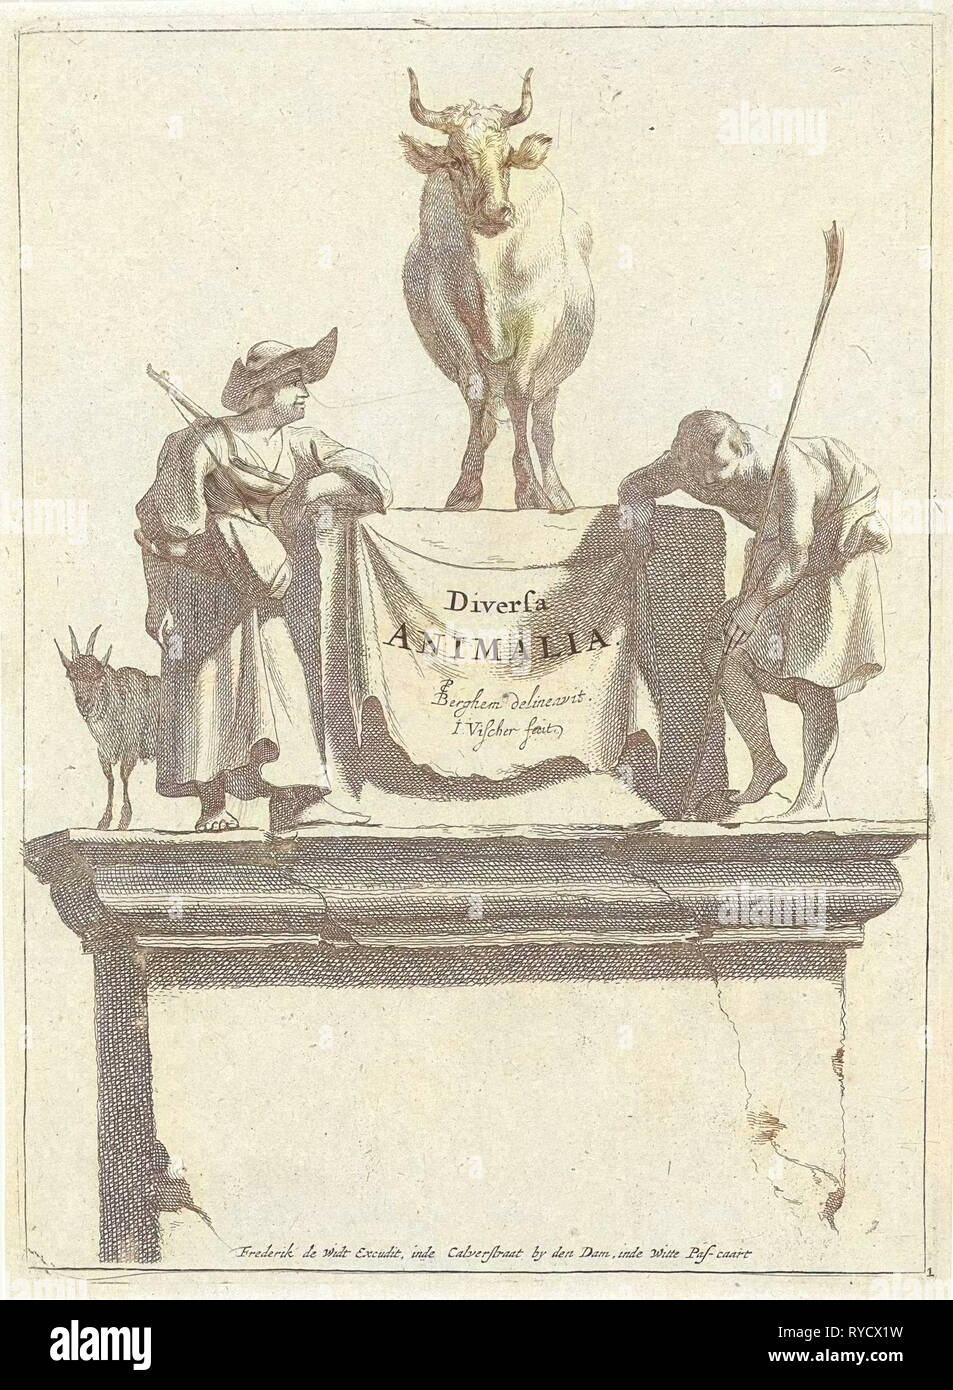 Title print for Diversa Animalia, Jan de Visscher, Frederik de Wit, 1643-1706 Stock Photo